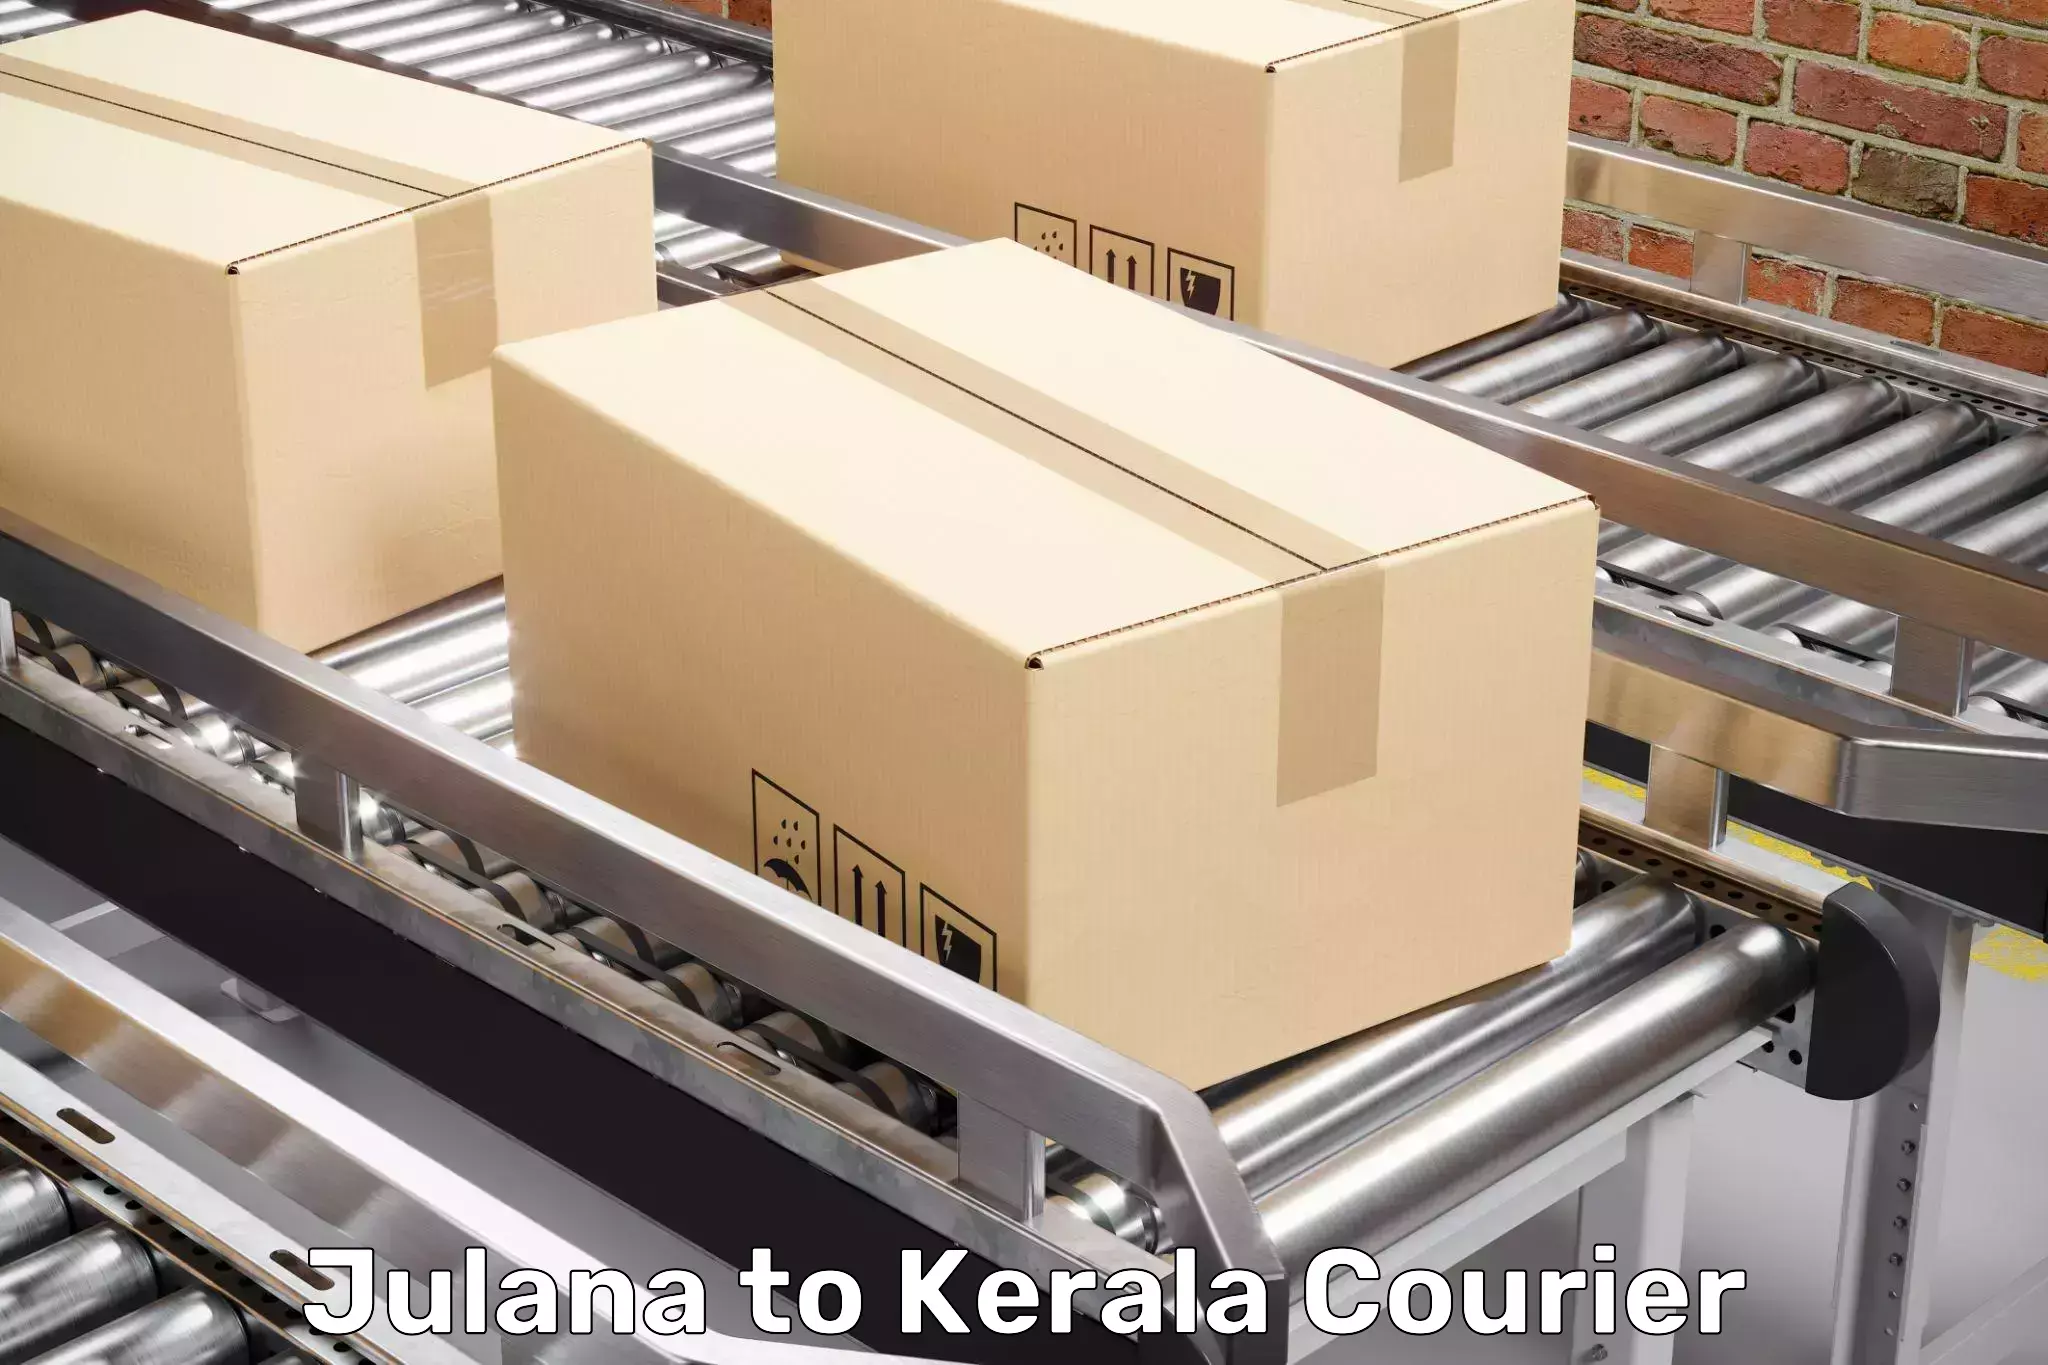 Professional moving company Julana to Kakkayam